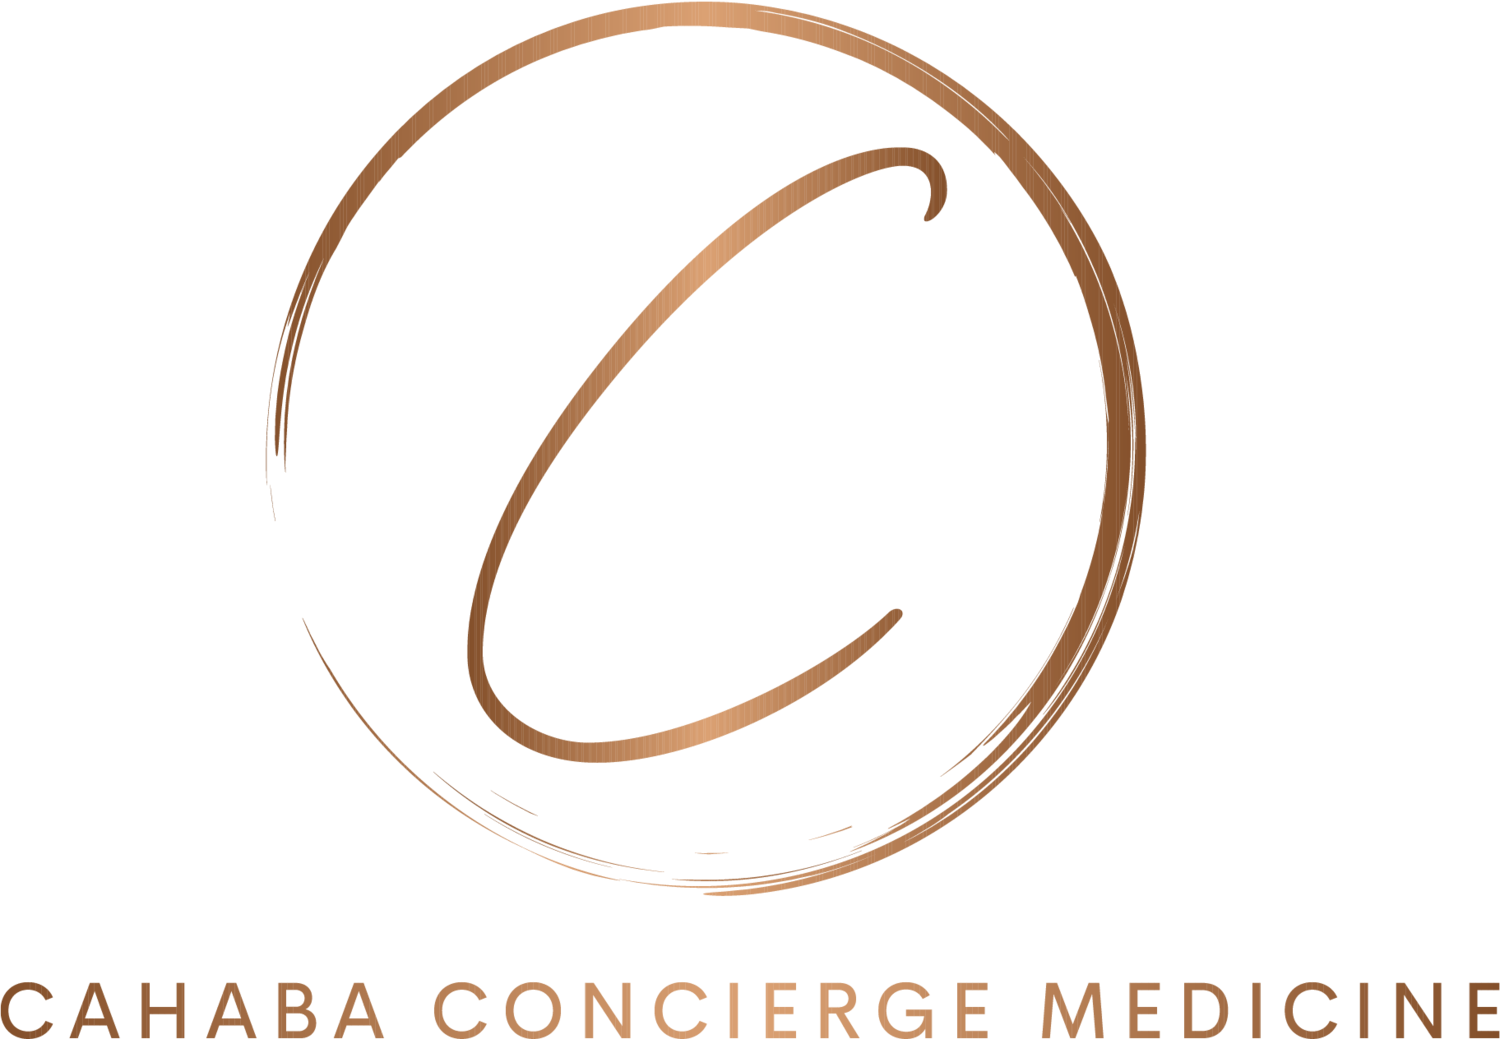 Cahaba Concierge Medicine